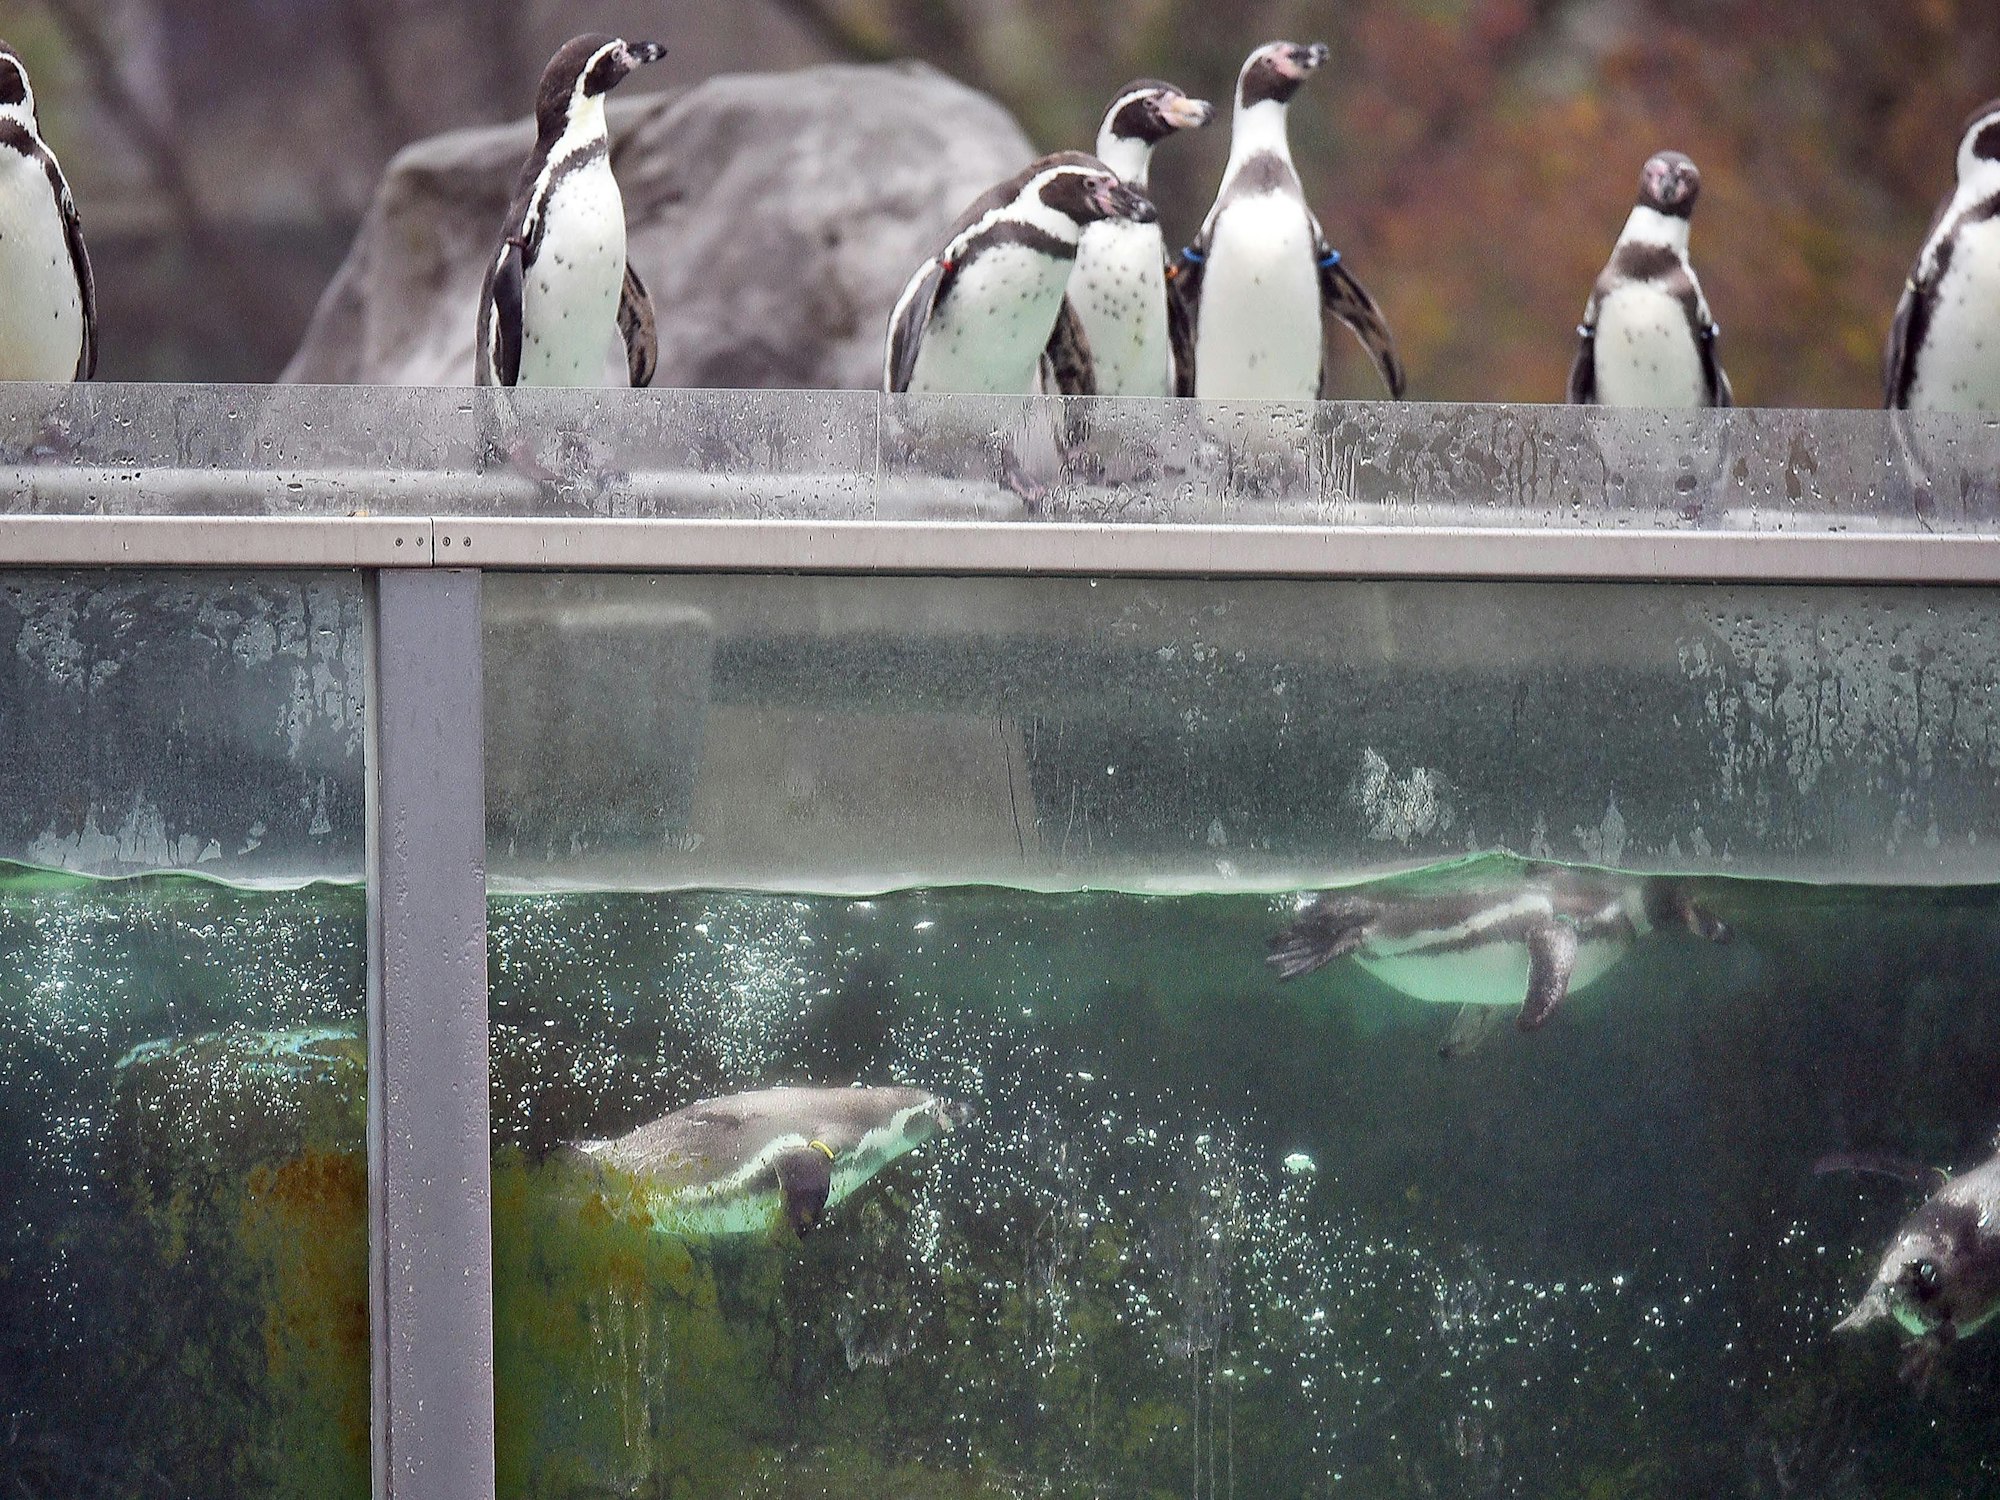 Humboldtpinguine baden im Zoo in Köln im Wasserbecken ihres Geheges.